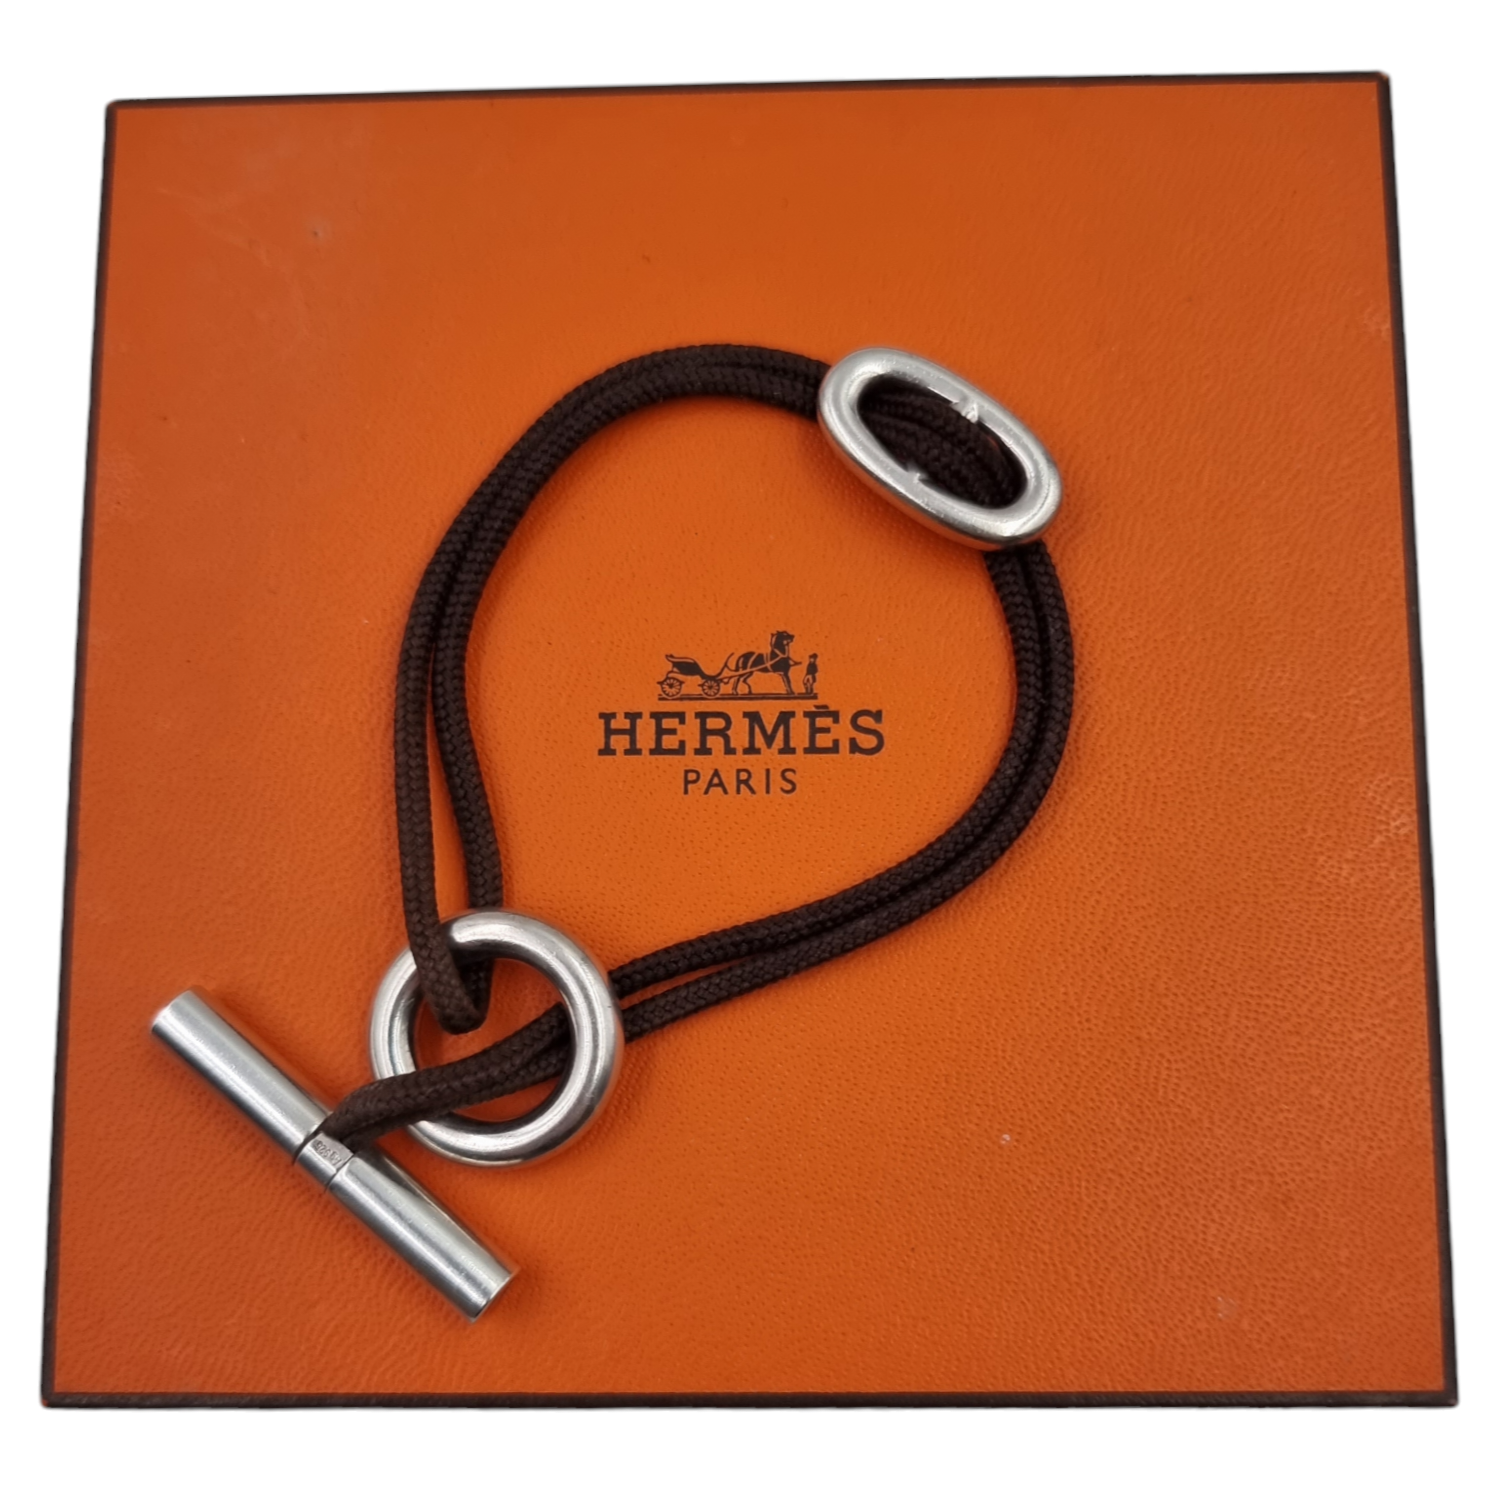 SUPER RARE Hermes Bolide Clutch Case, Tousse de Voyage Black Noir BNIB  BRAND NEW